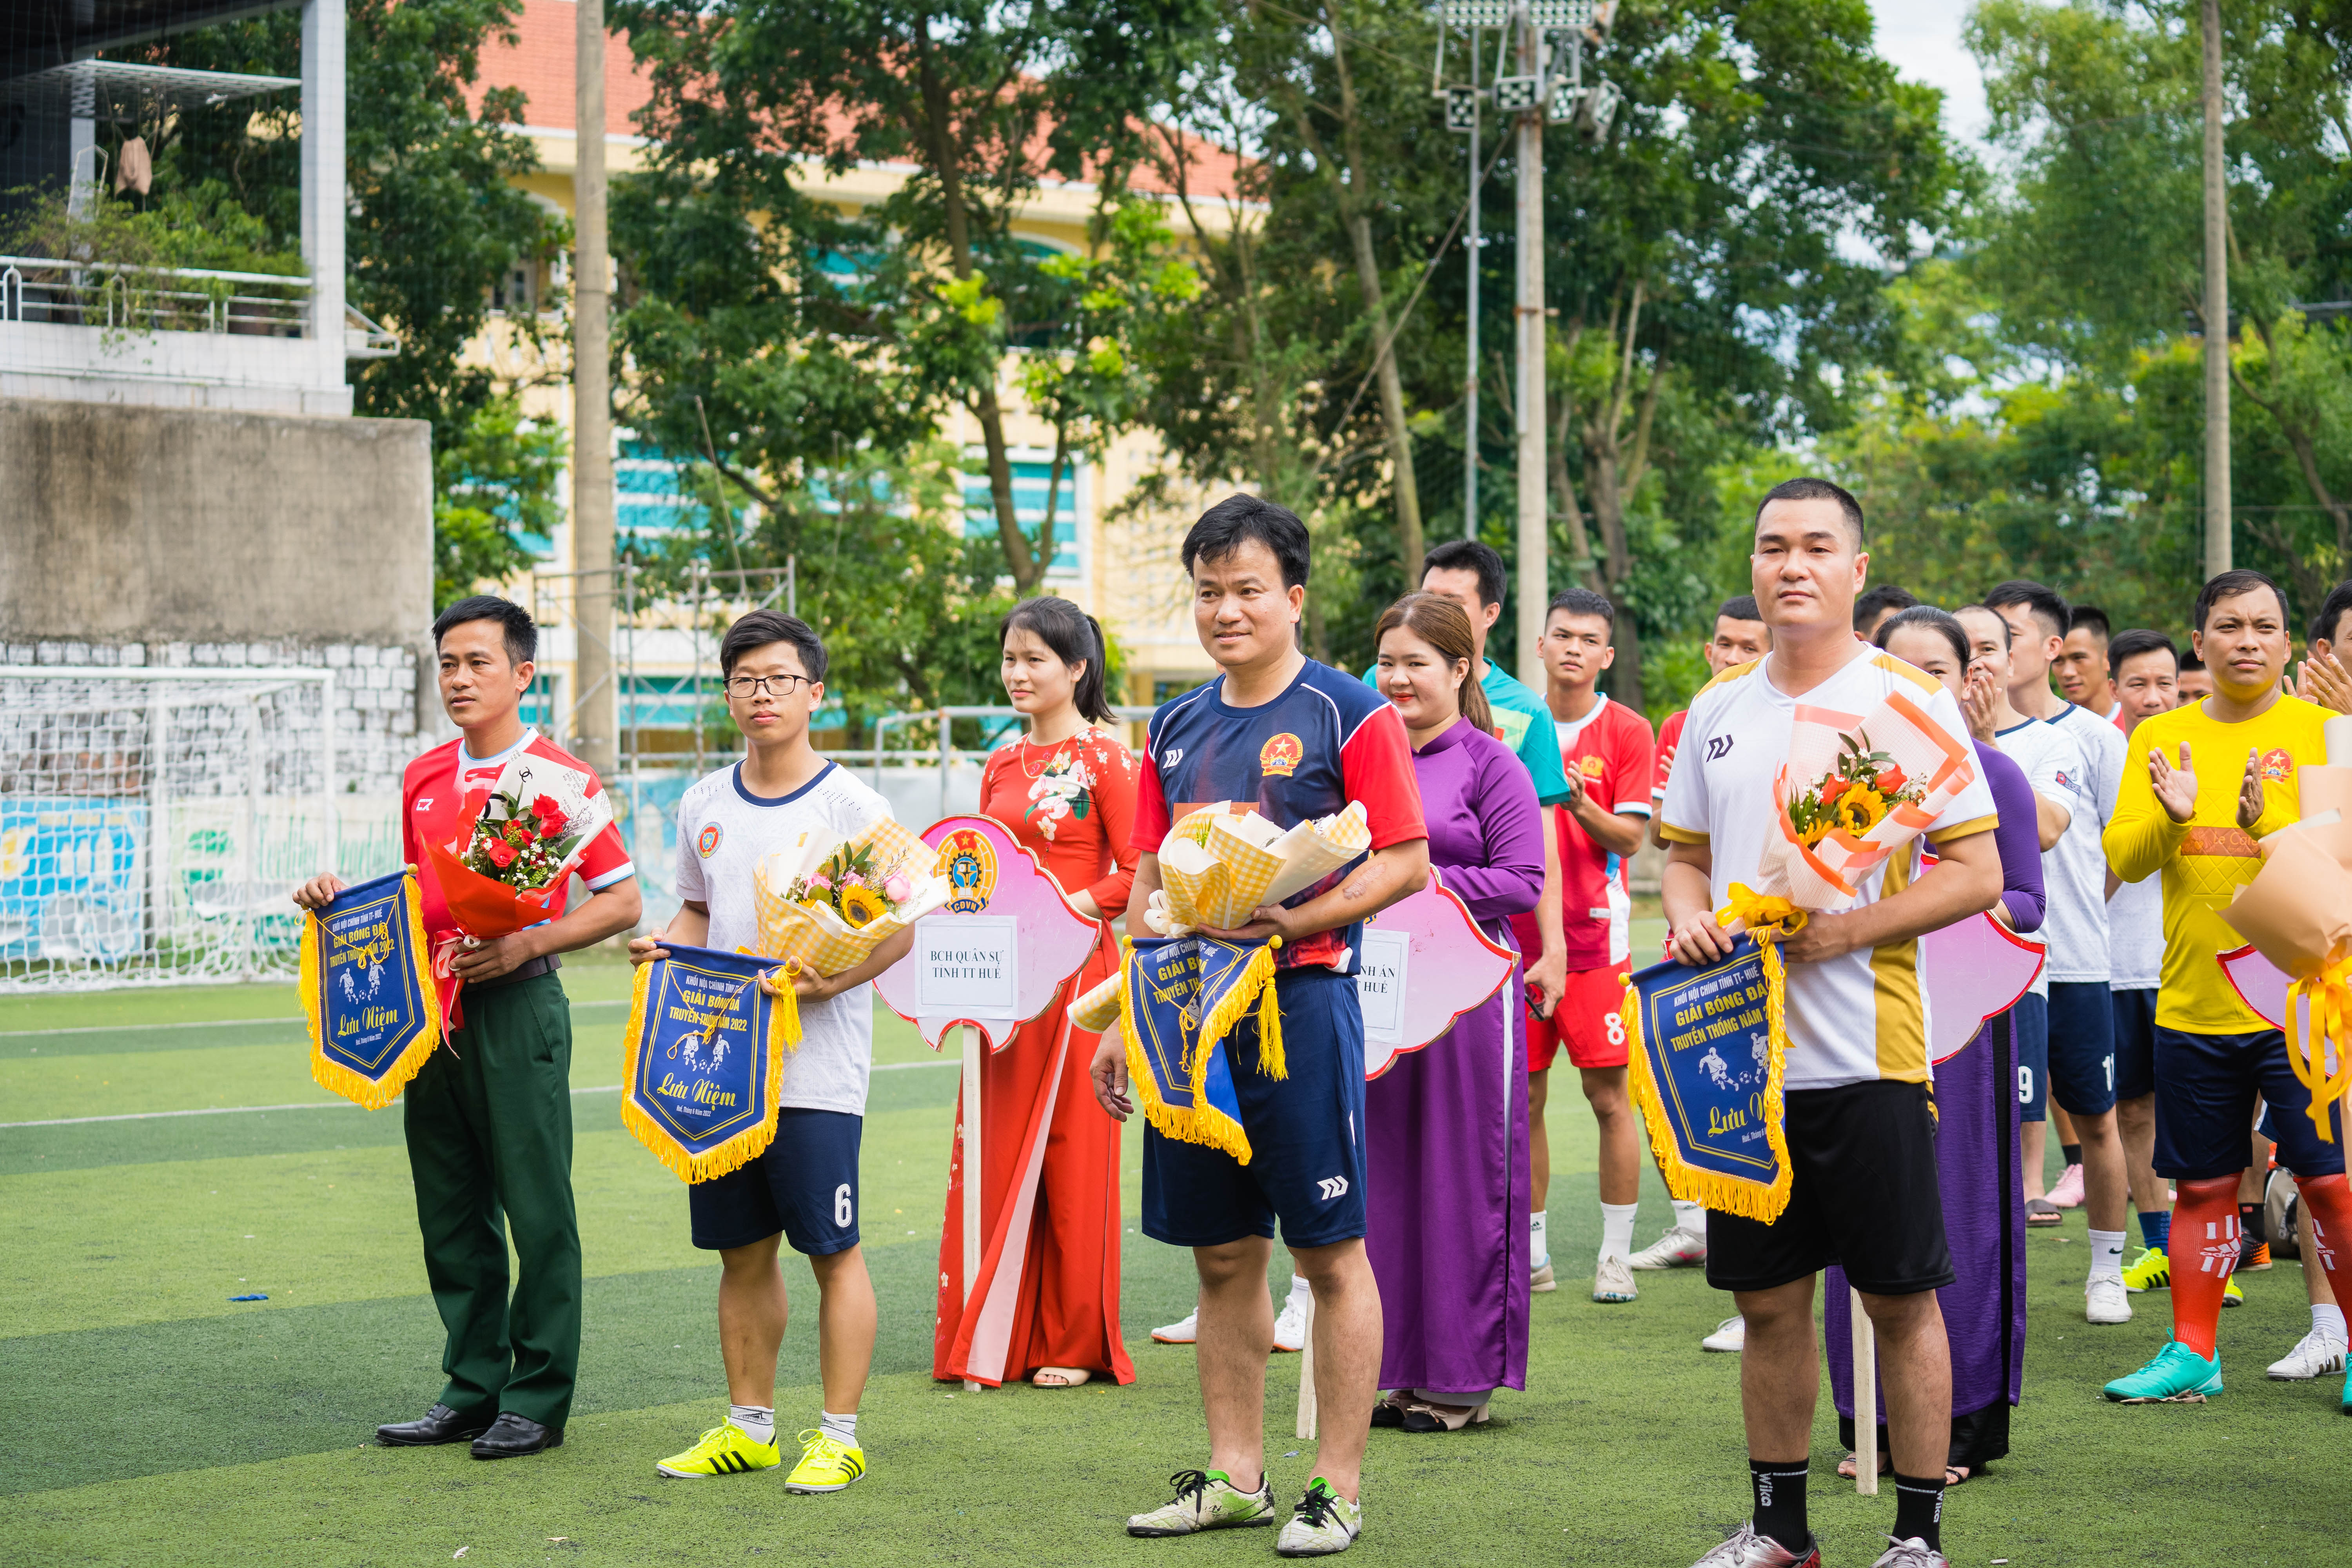 Cục Thi hành án dân sự tỉnh Thừa Thiên Huế tham gia giải bóng đá truyền thống khối nội chính tỉnh Thừa Thiên Huế năm 2022